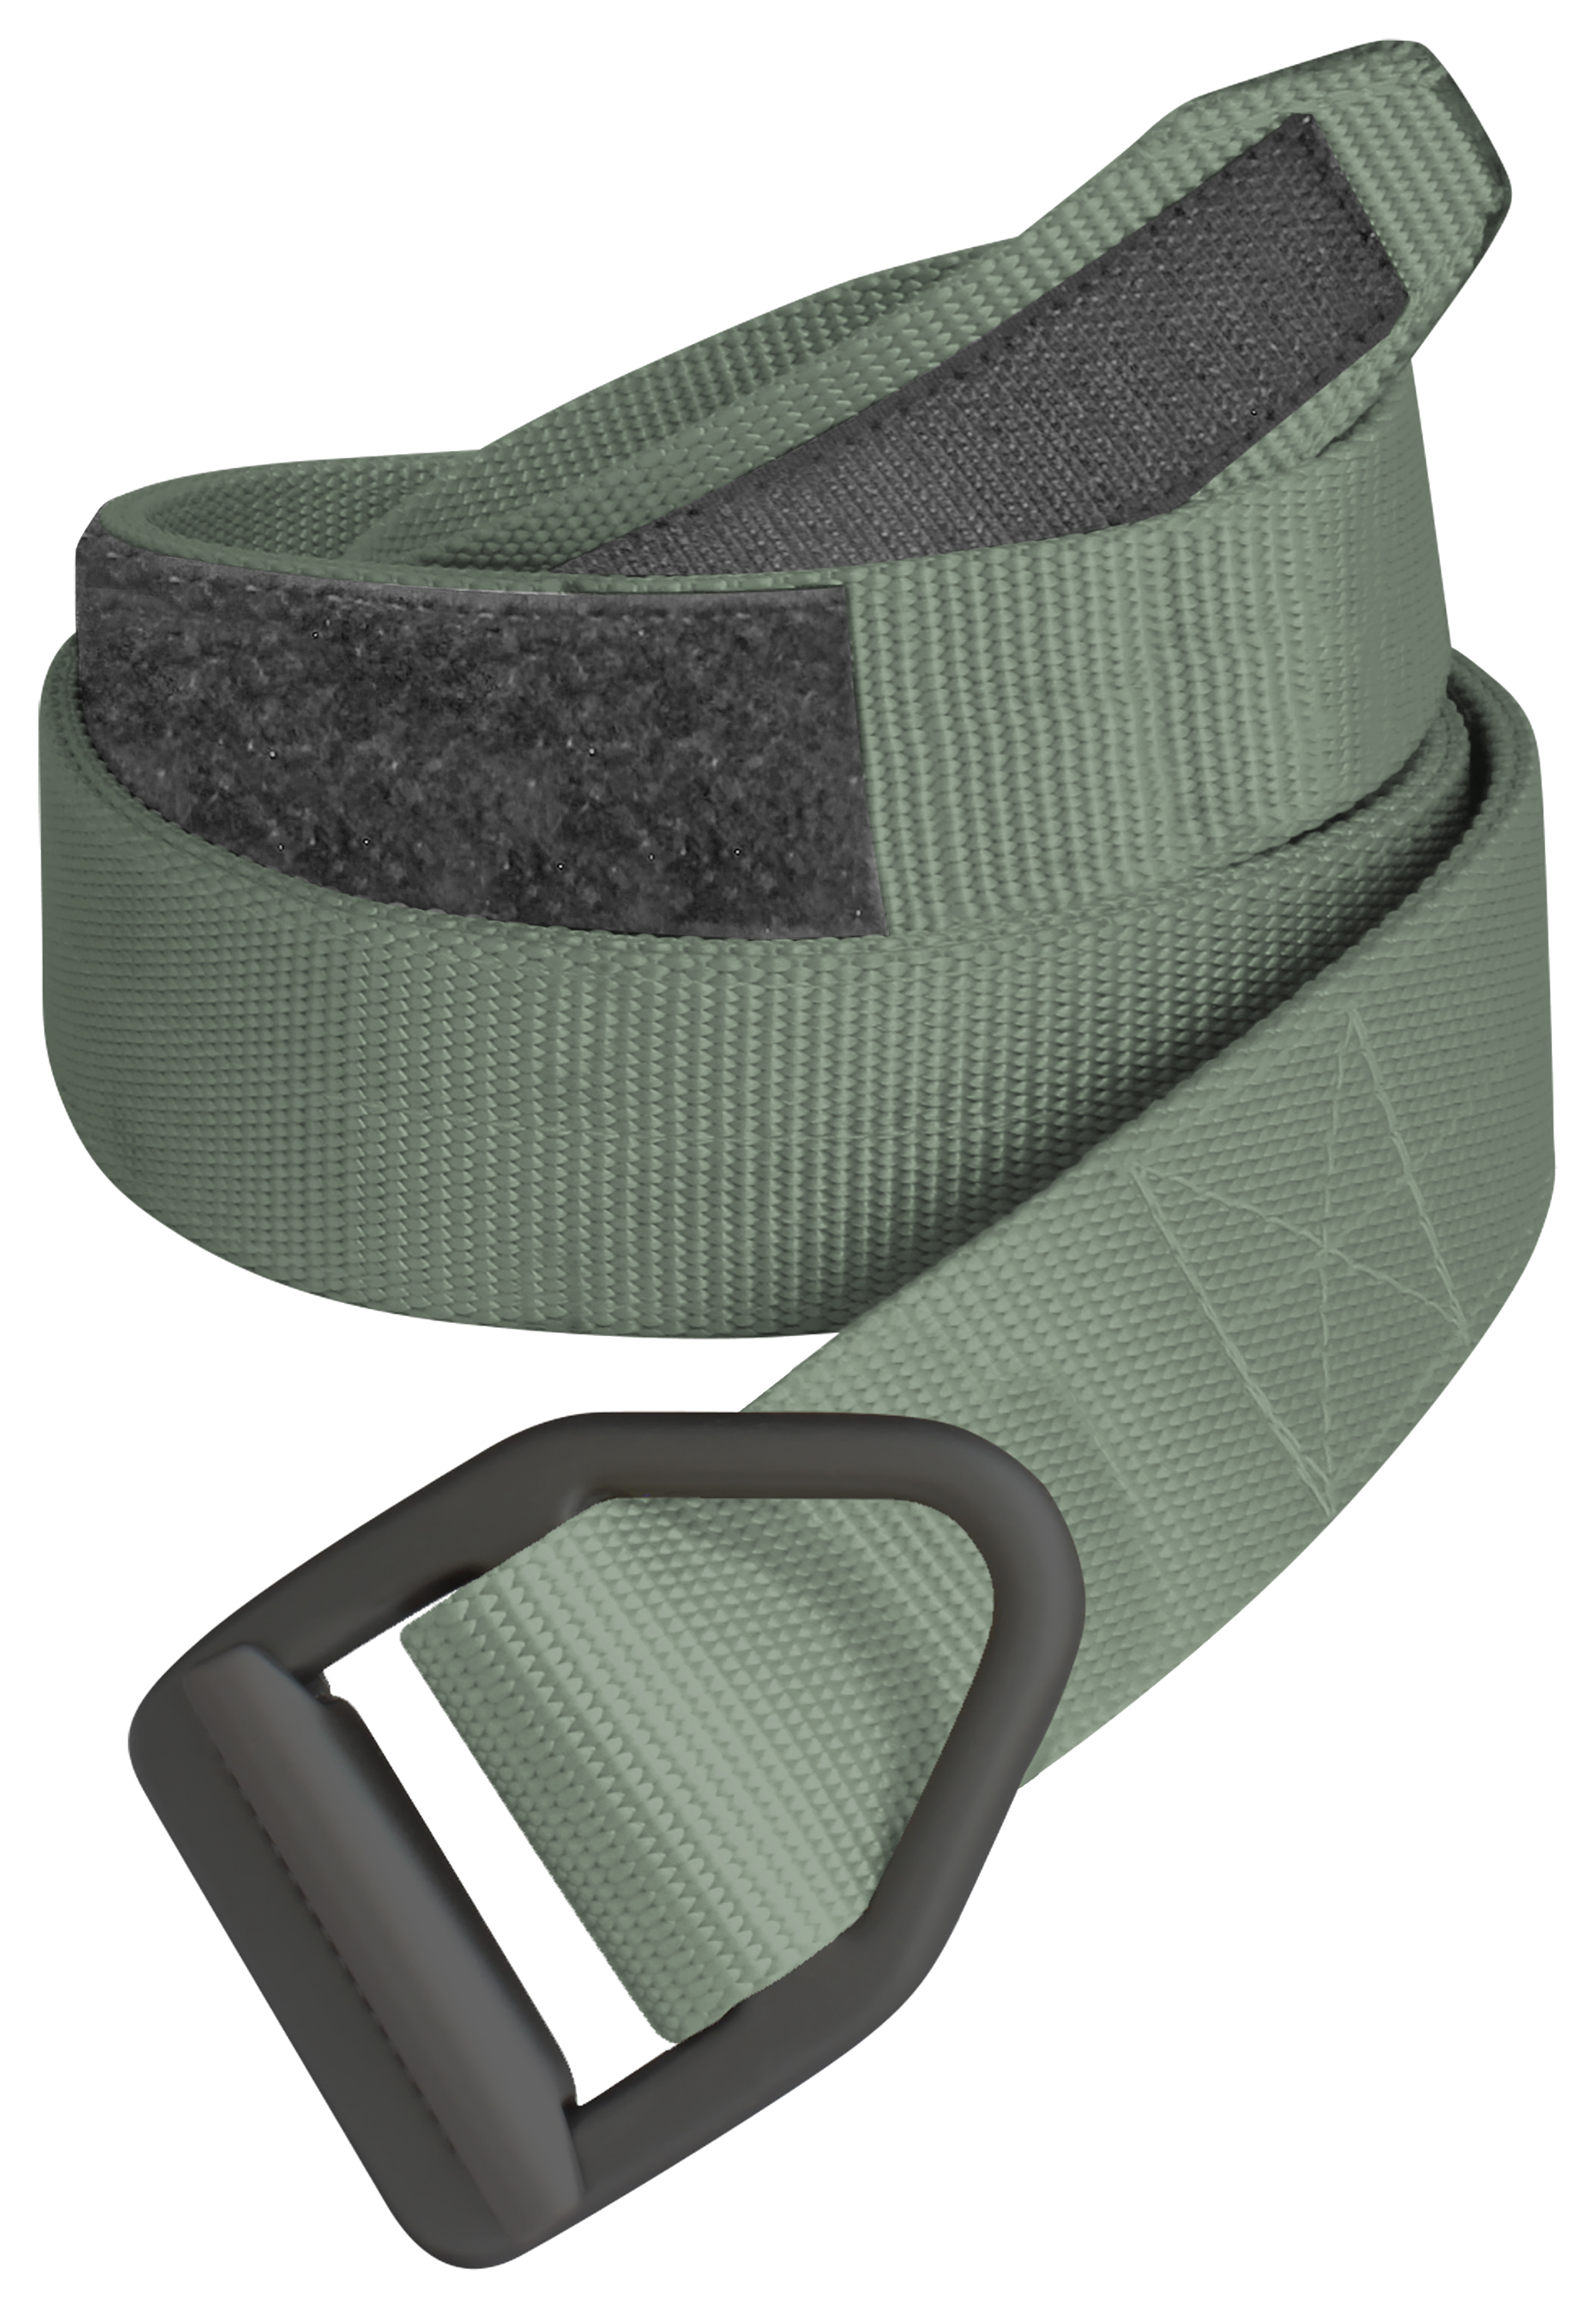 Bison Designs Last Chance Heavy-Duty Belt for Men - Olive - L